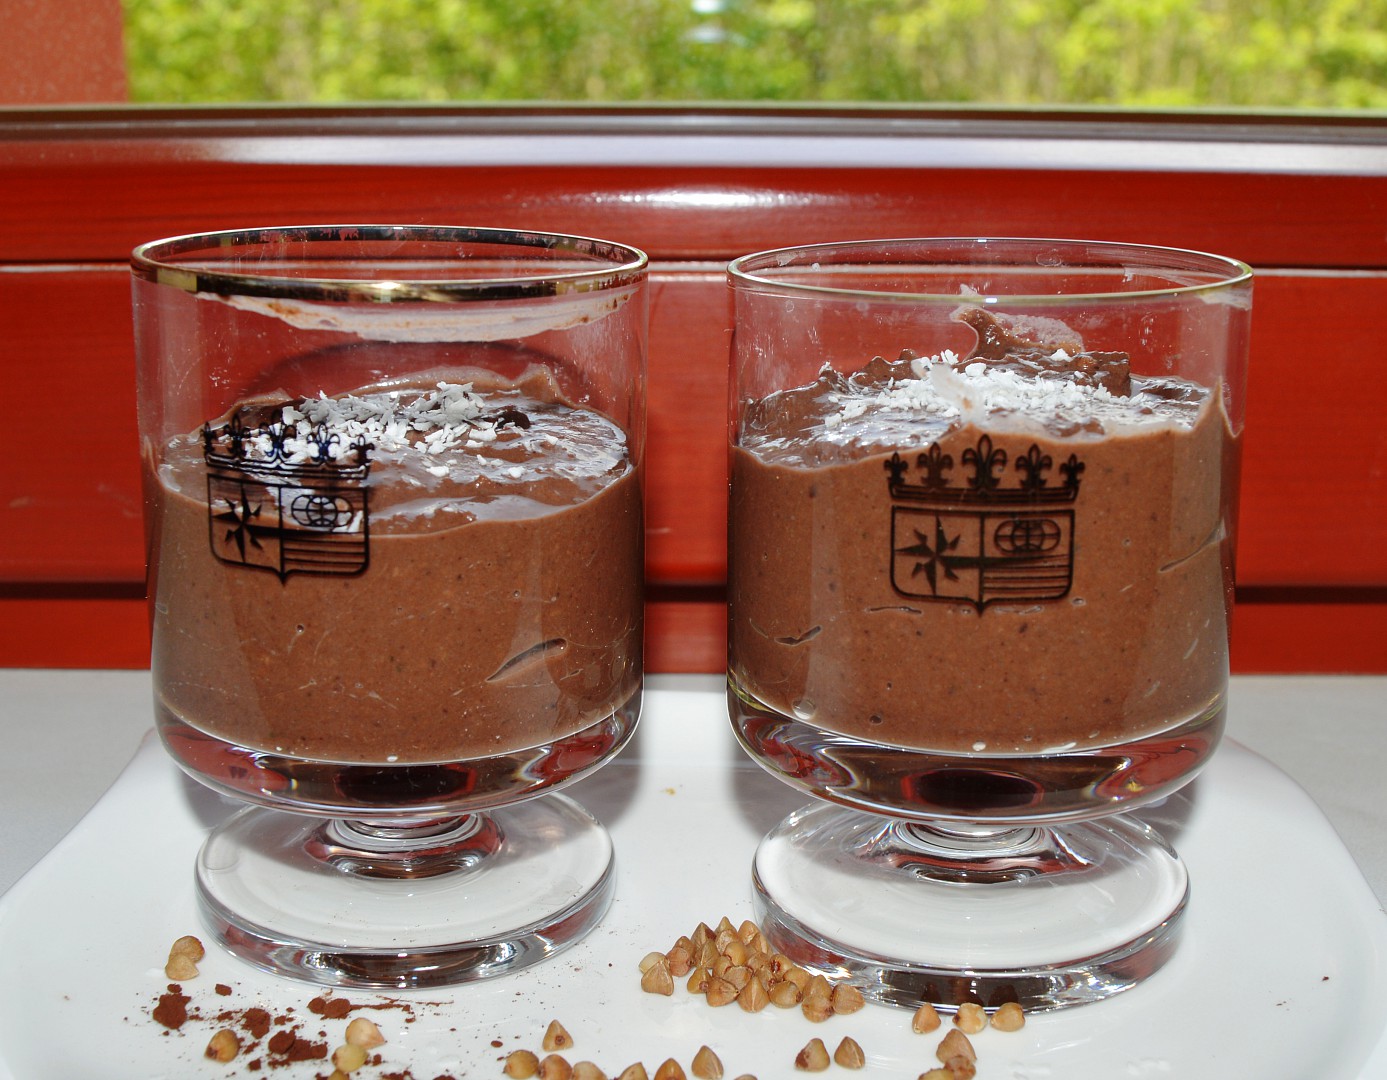 Raw kakaovo-kokosový pohár z pohanky